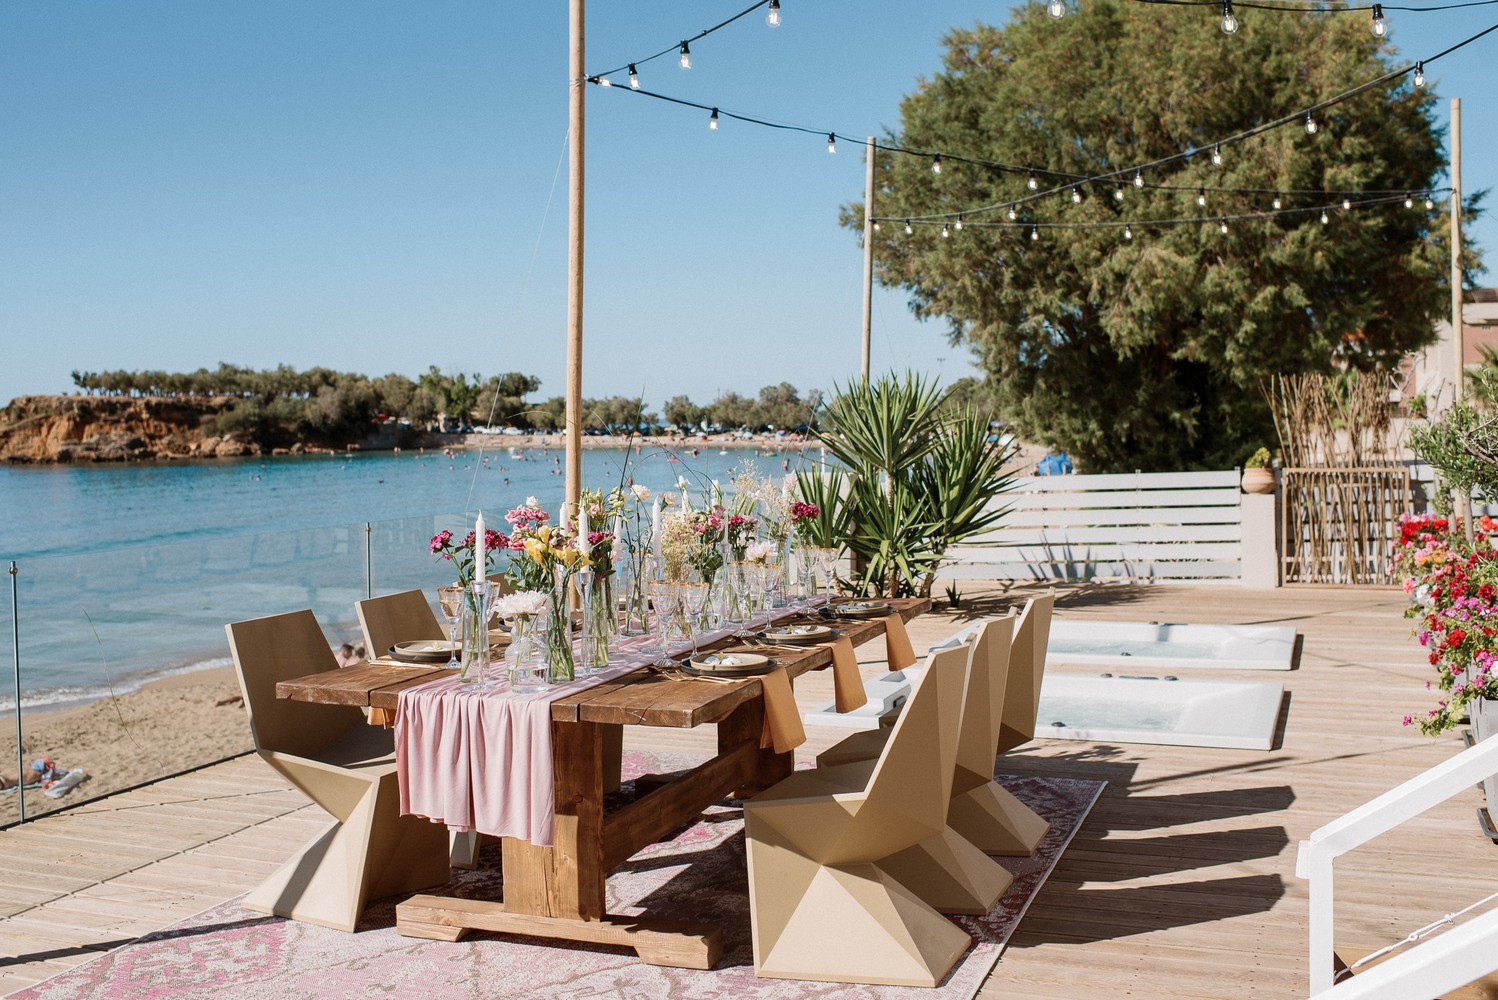 Private beach villa styled photo shoot in Crete | Crete for Love